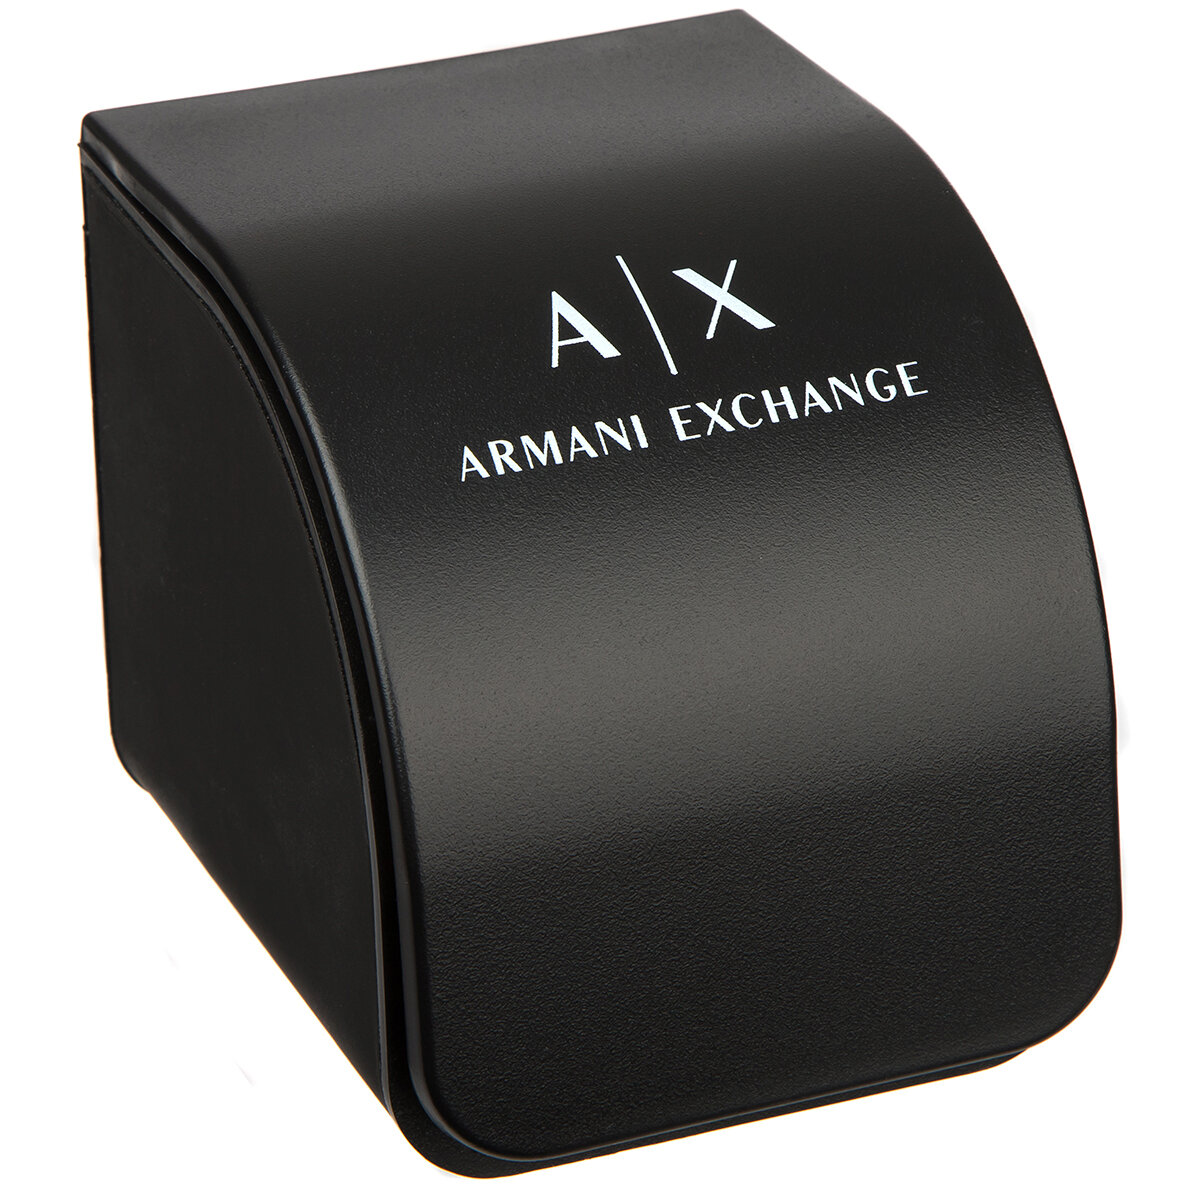 ARMANI EXCHANGE AX2700